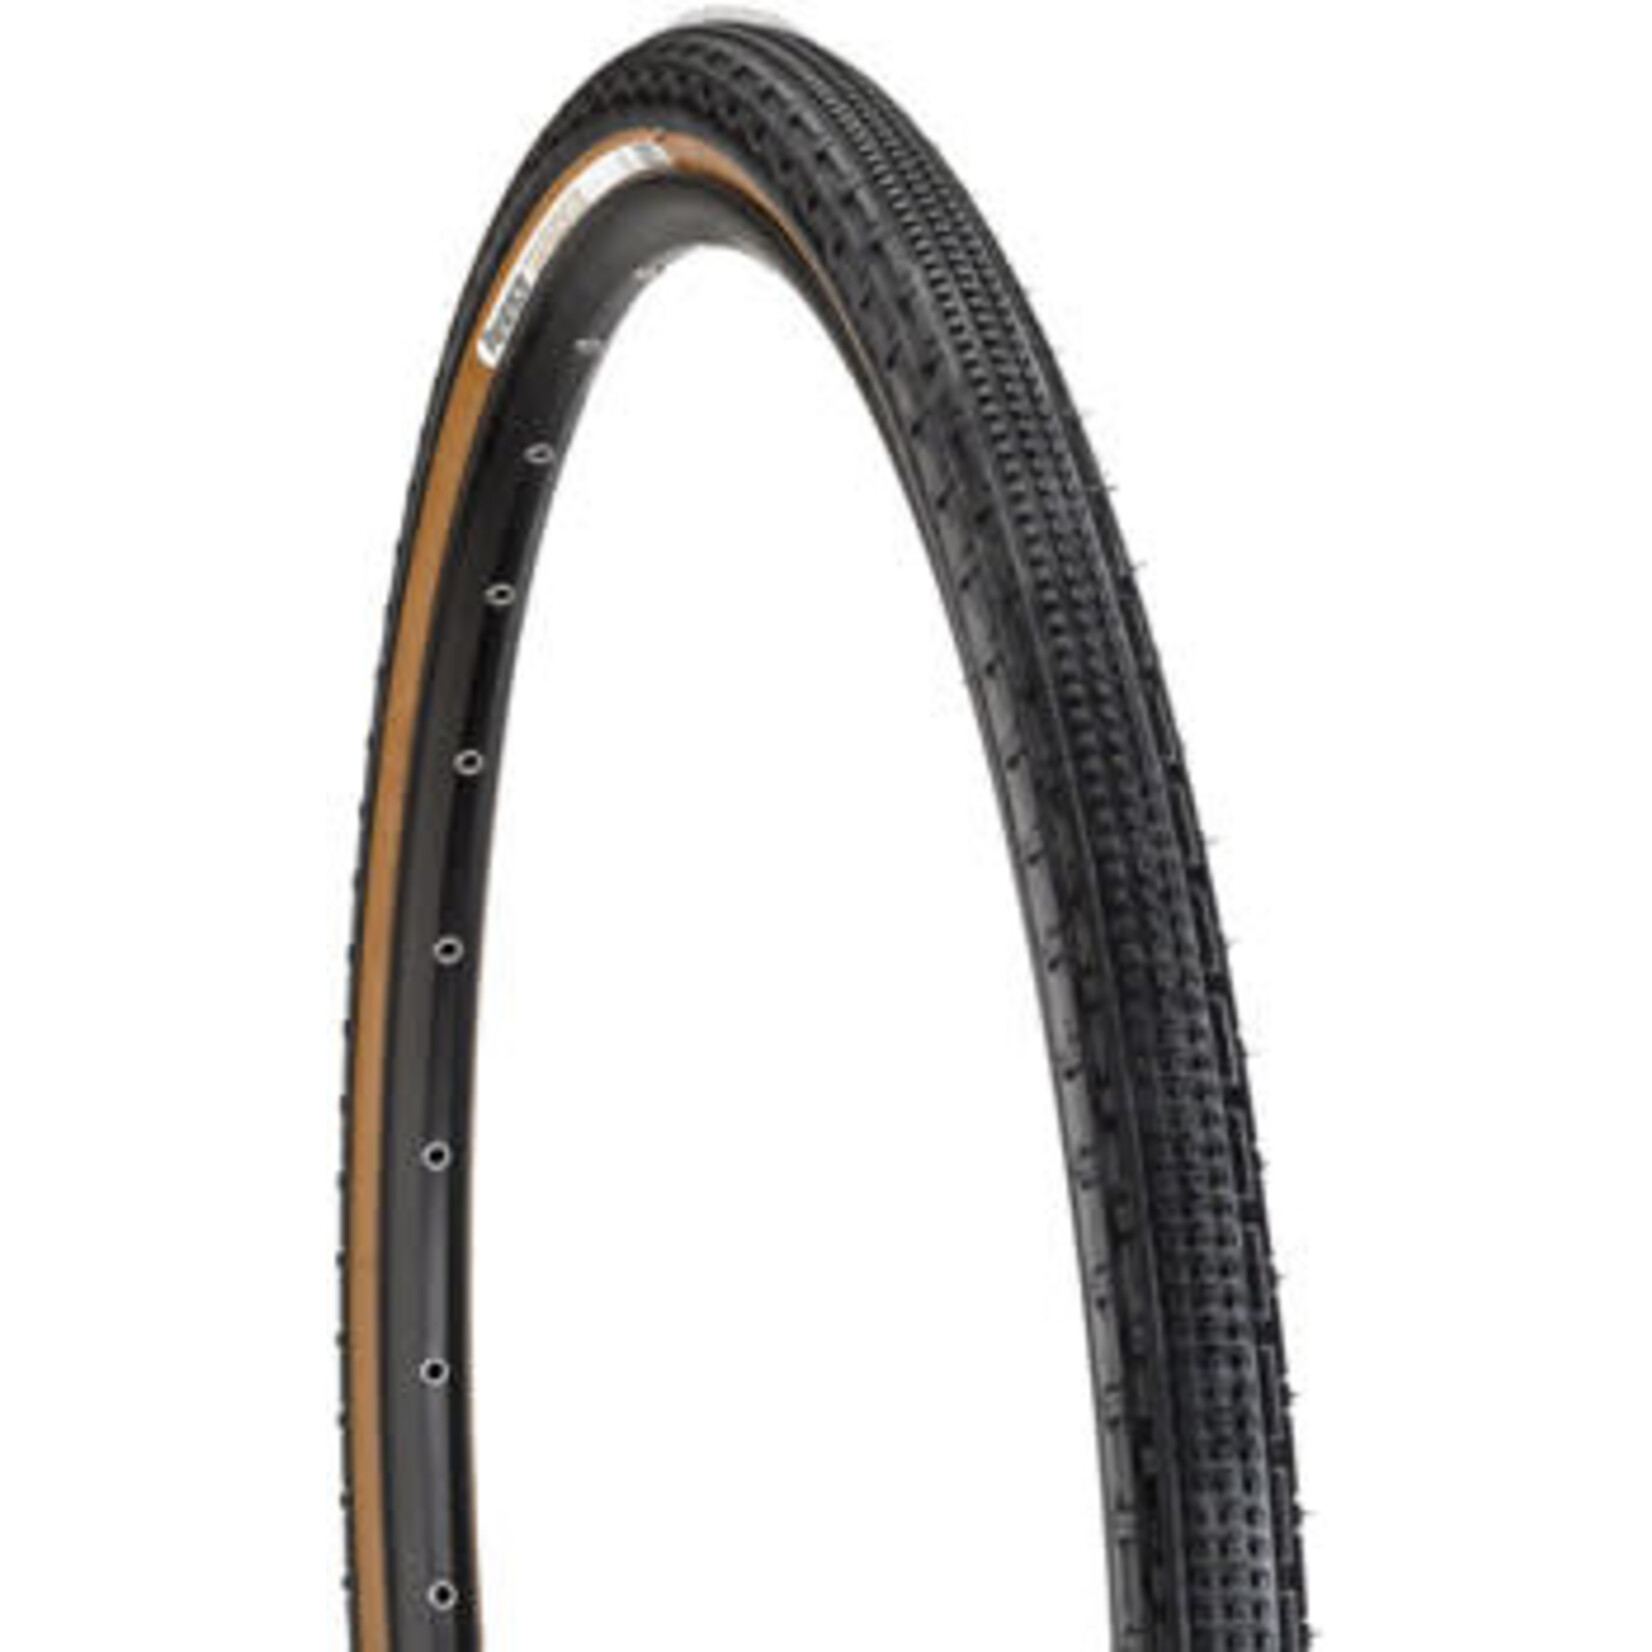 Panaracer Panaracer GravelKing SK Tire - 27.5 x 2.10 / 650b x 54, Tubeless, Folding, Black/Brown